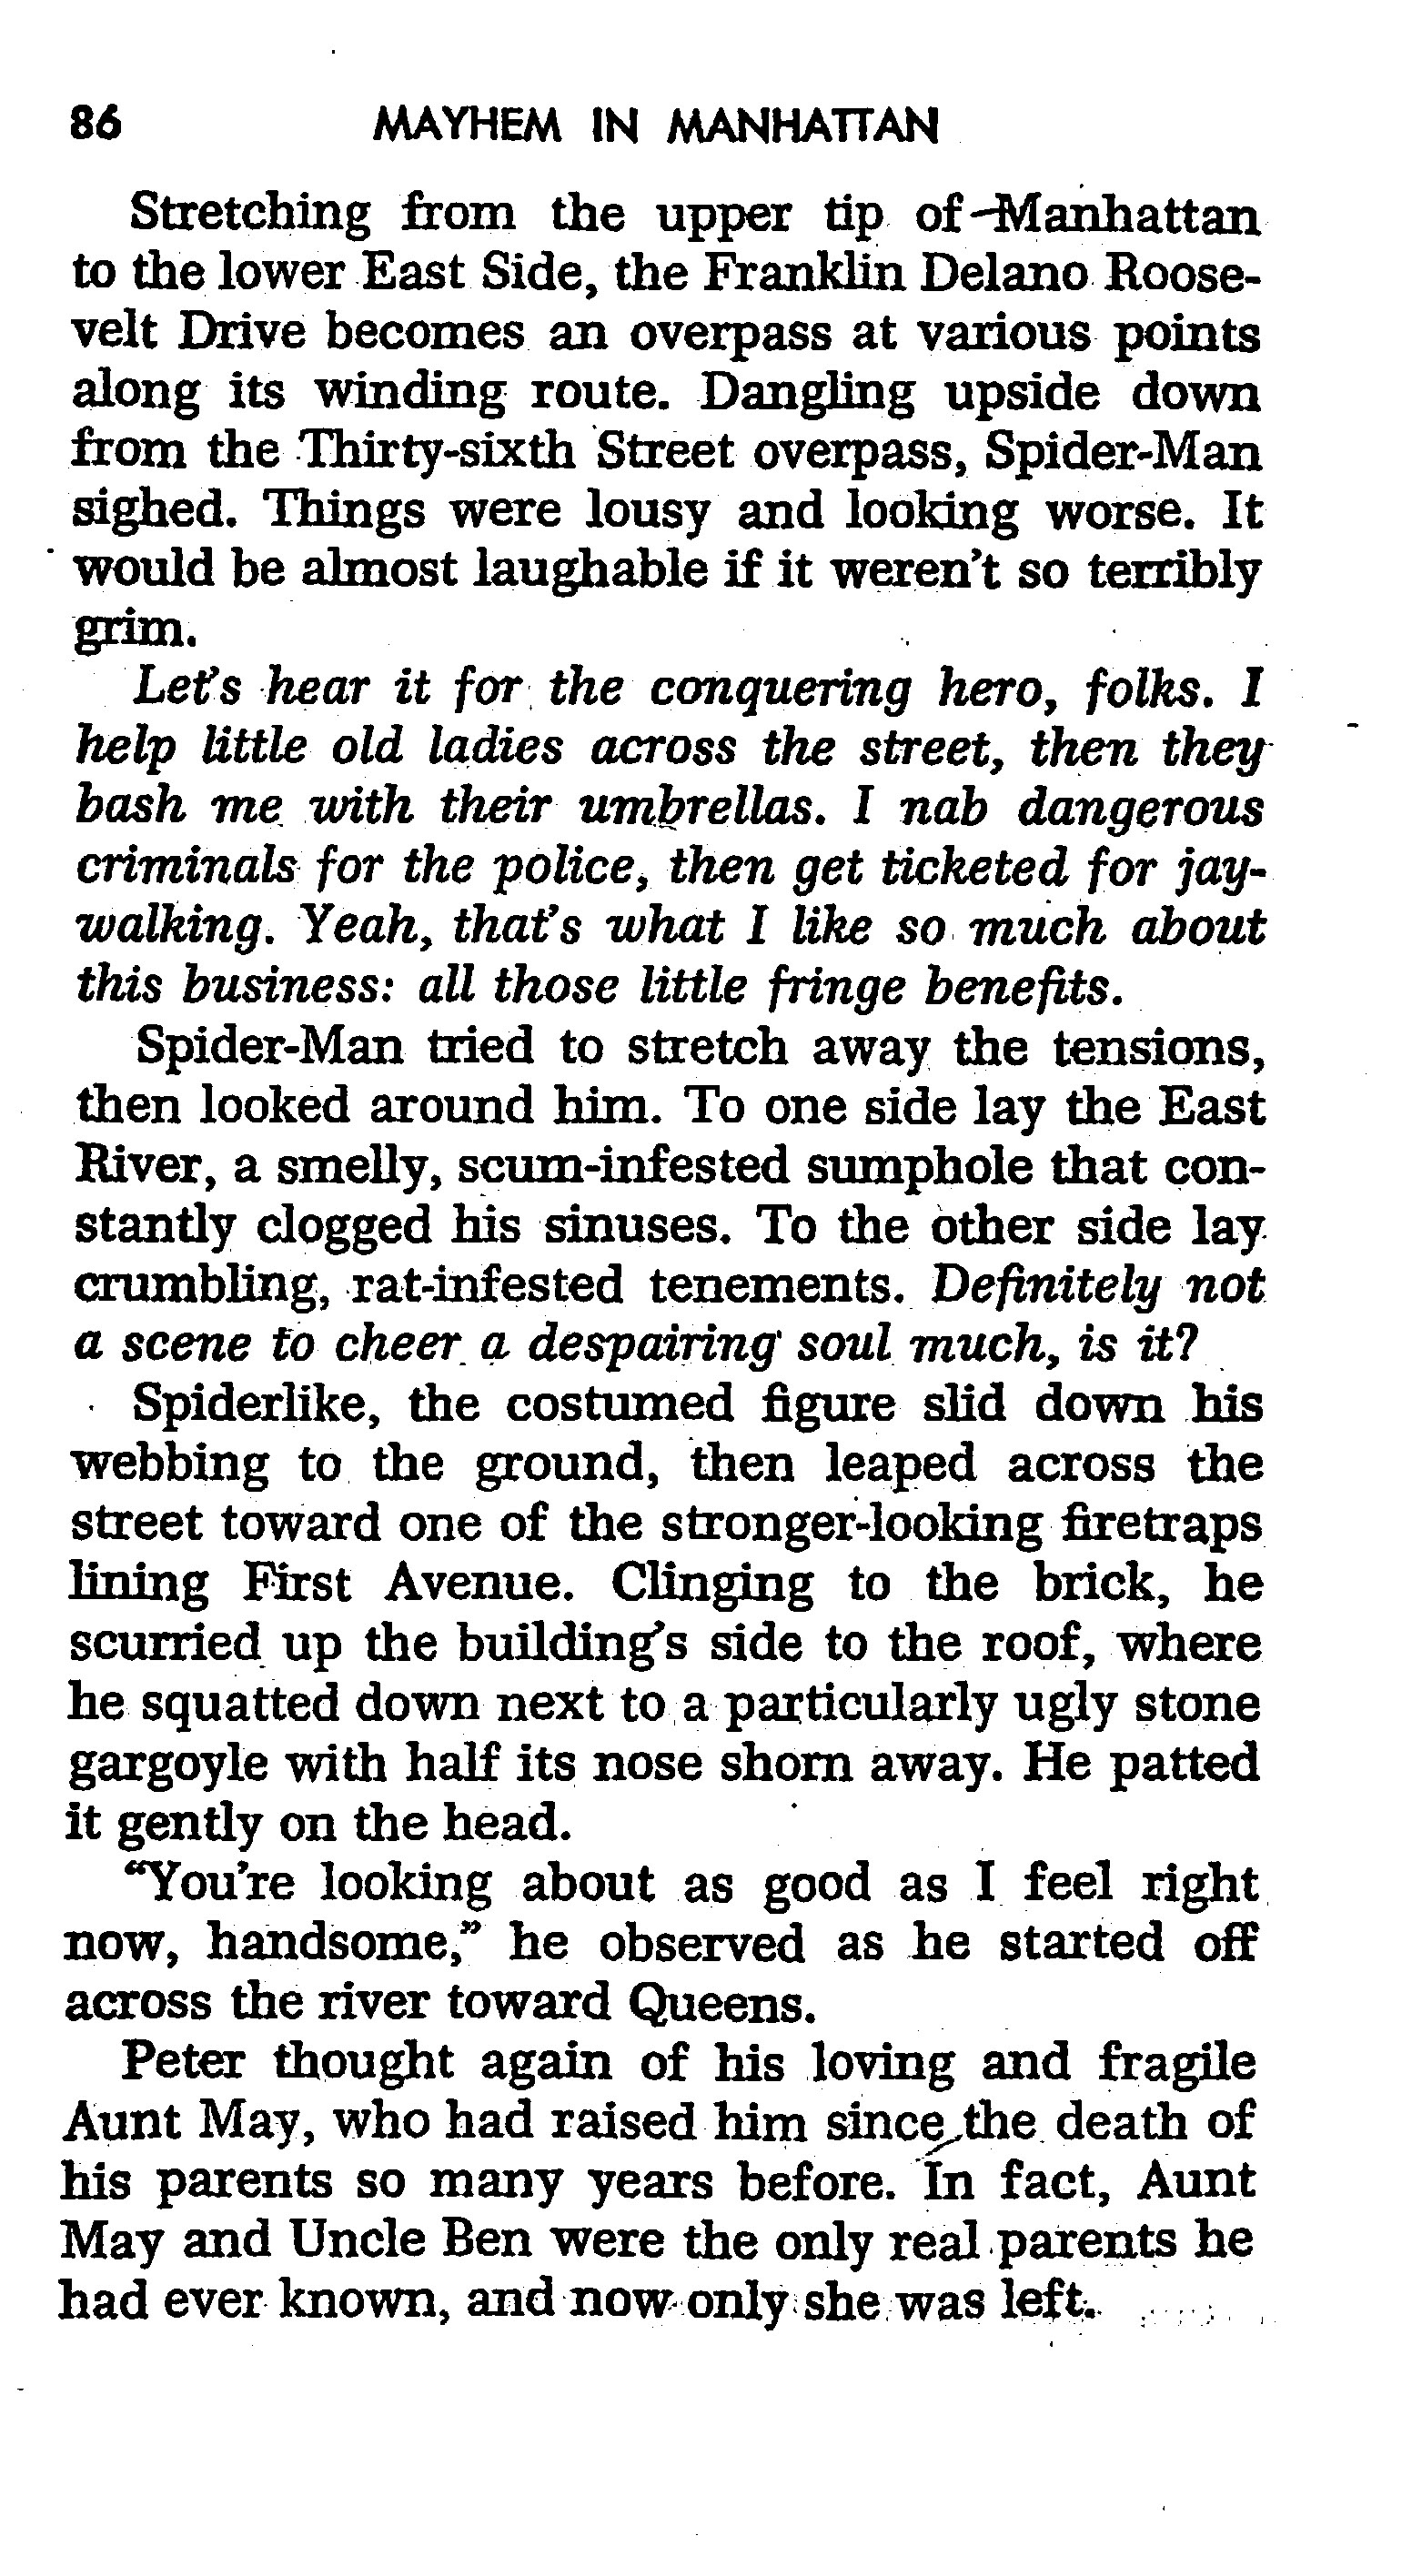 Read online The Amazing Spider-Man: Mayhem in Manhattan comic -  Issue # TPB (Part 1) - 87